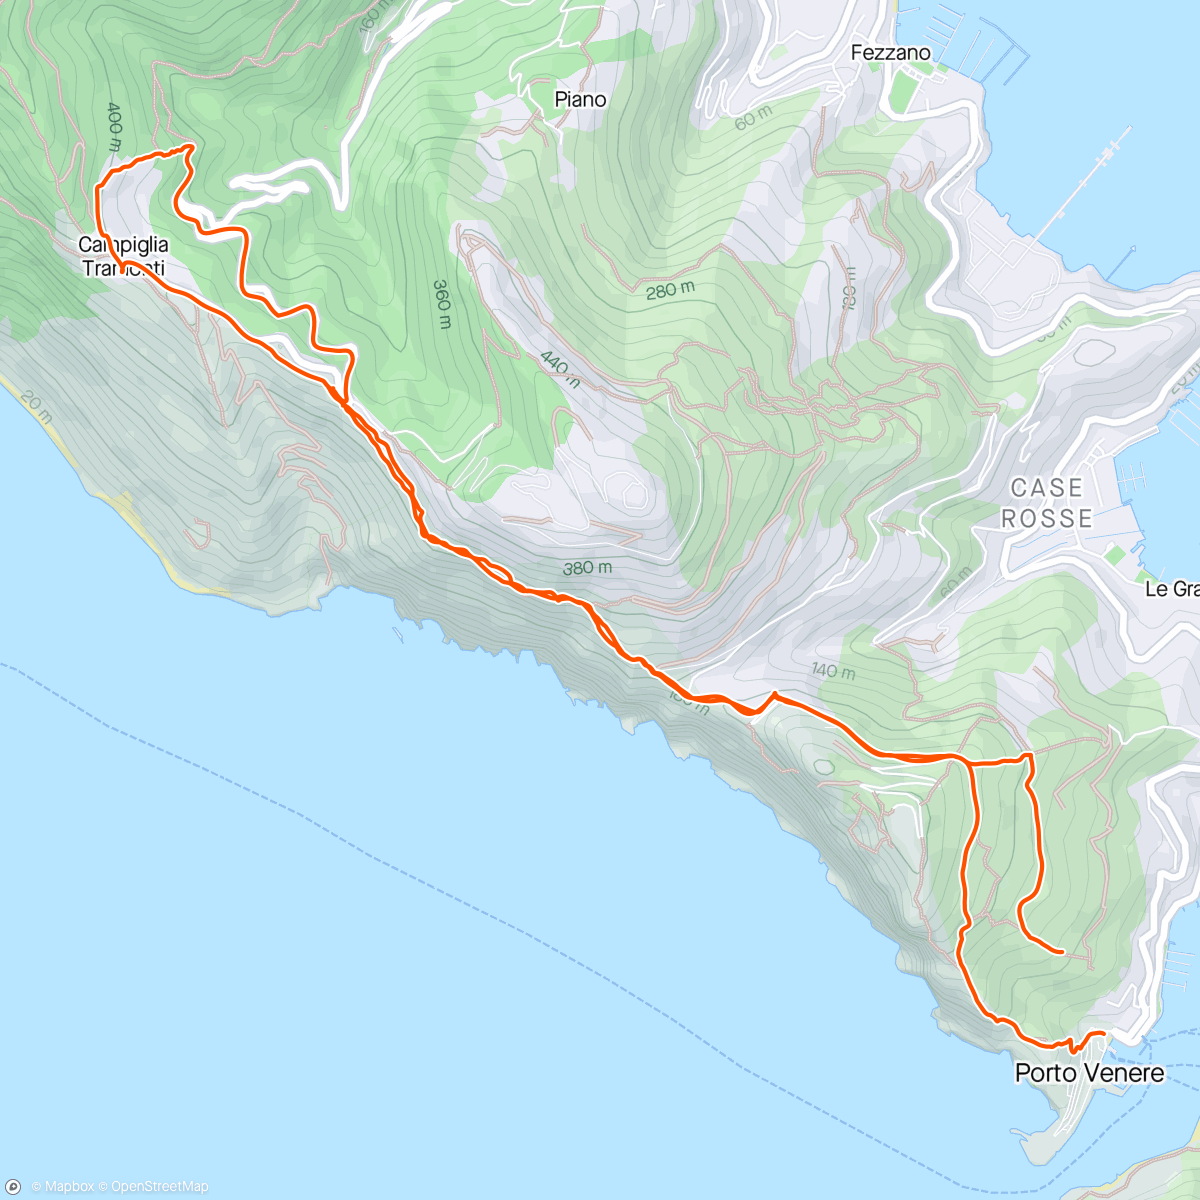 「Portovenere - Camipiglia 🤩」活動的地圖